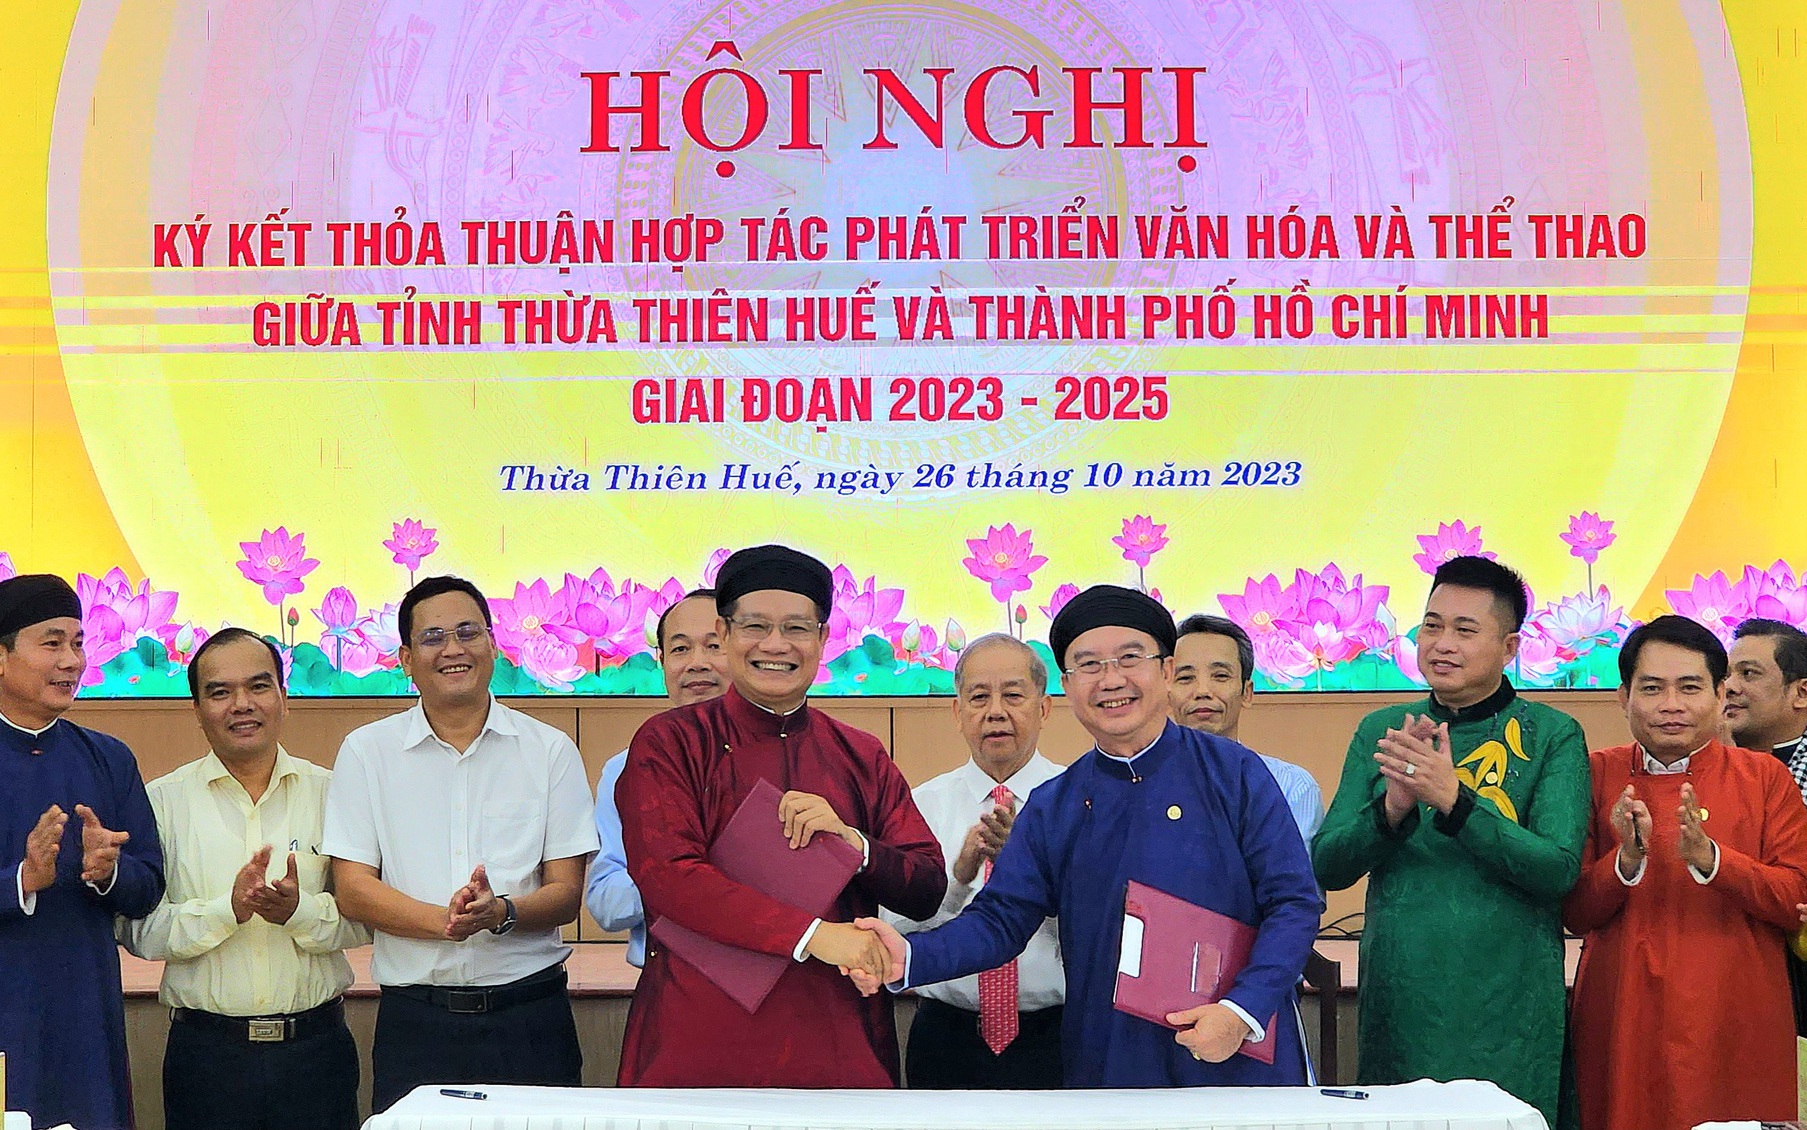 TPHCM và tỉnh Thừa Thiên Huế ký kết hợp tác phát triển văn hóa, thể thao